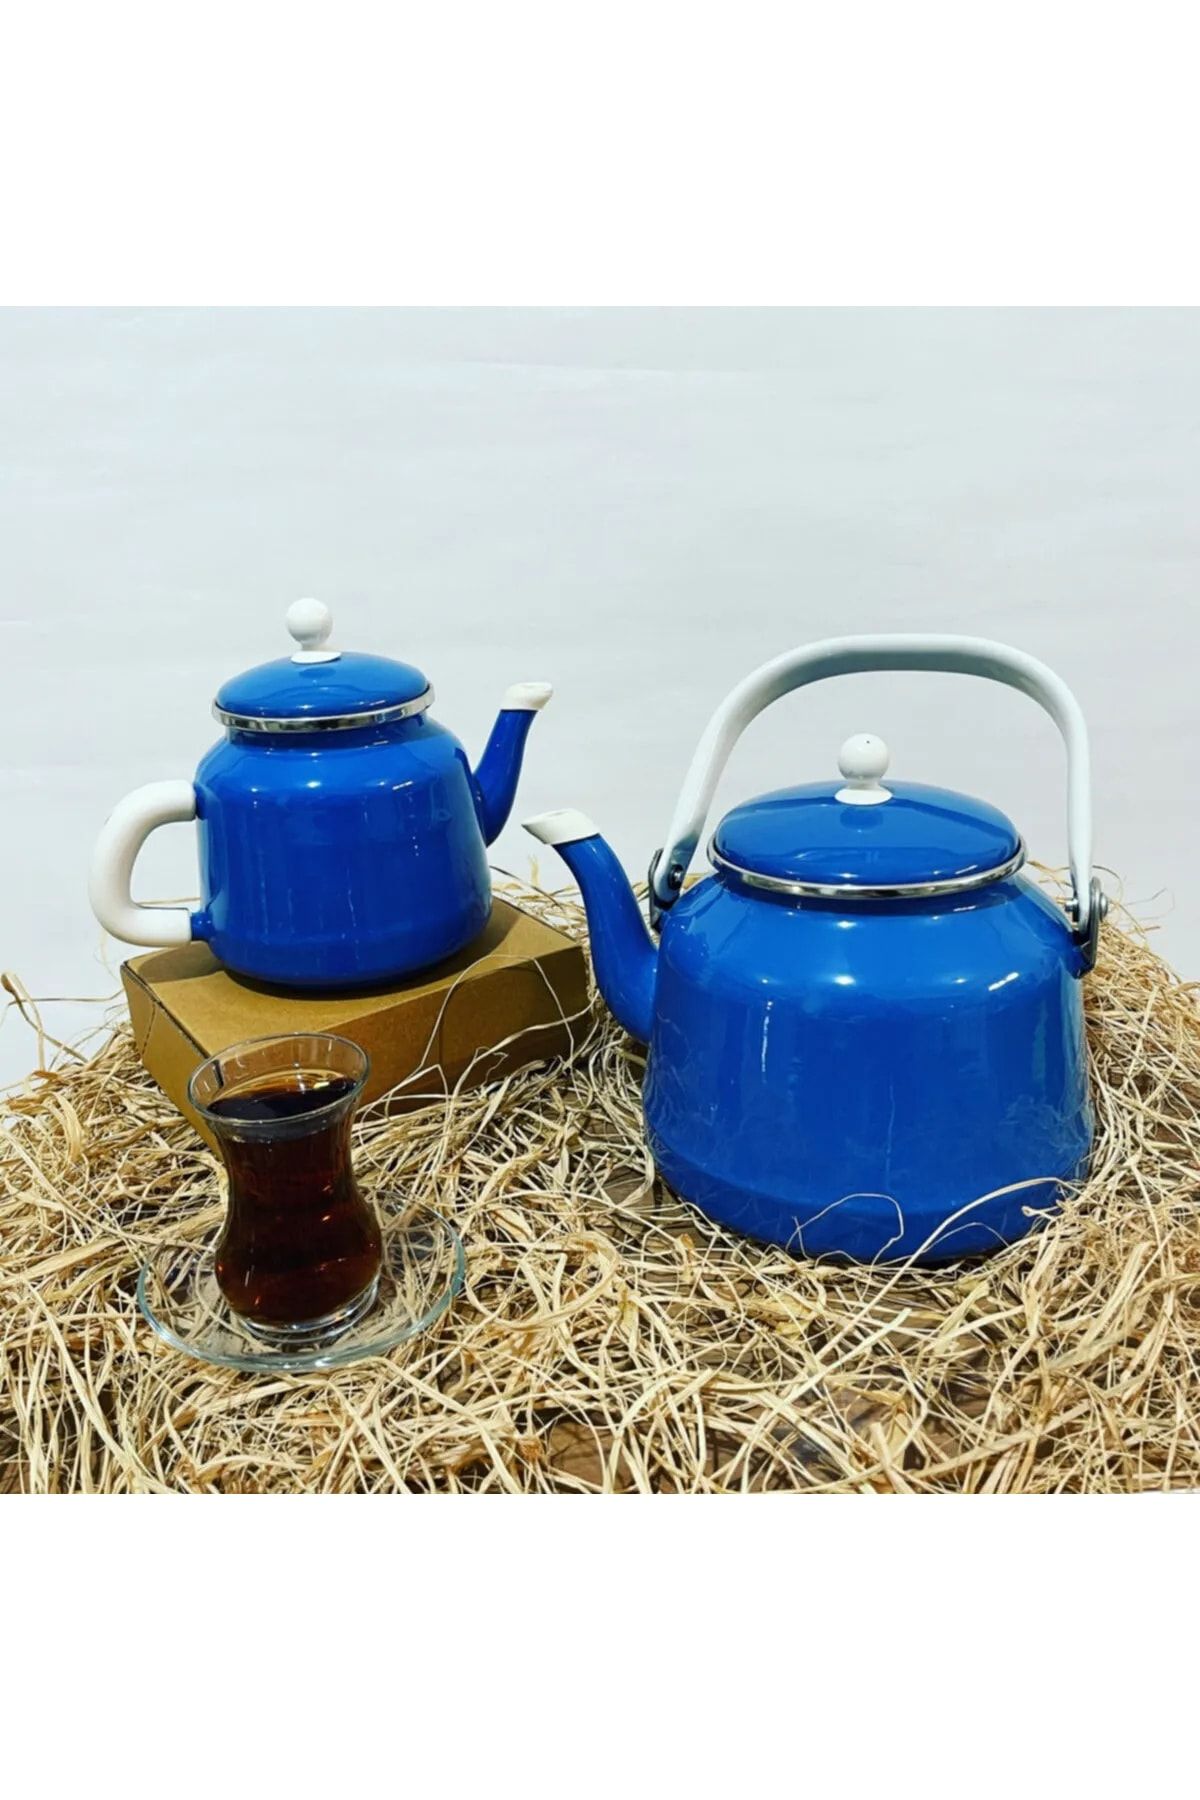 ALEV Emaye Vintage Mavi Çaydanlık Seti Çift Kapaklı